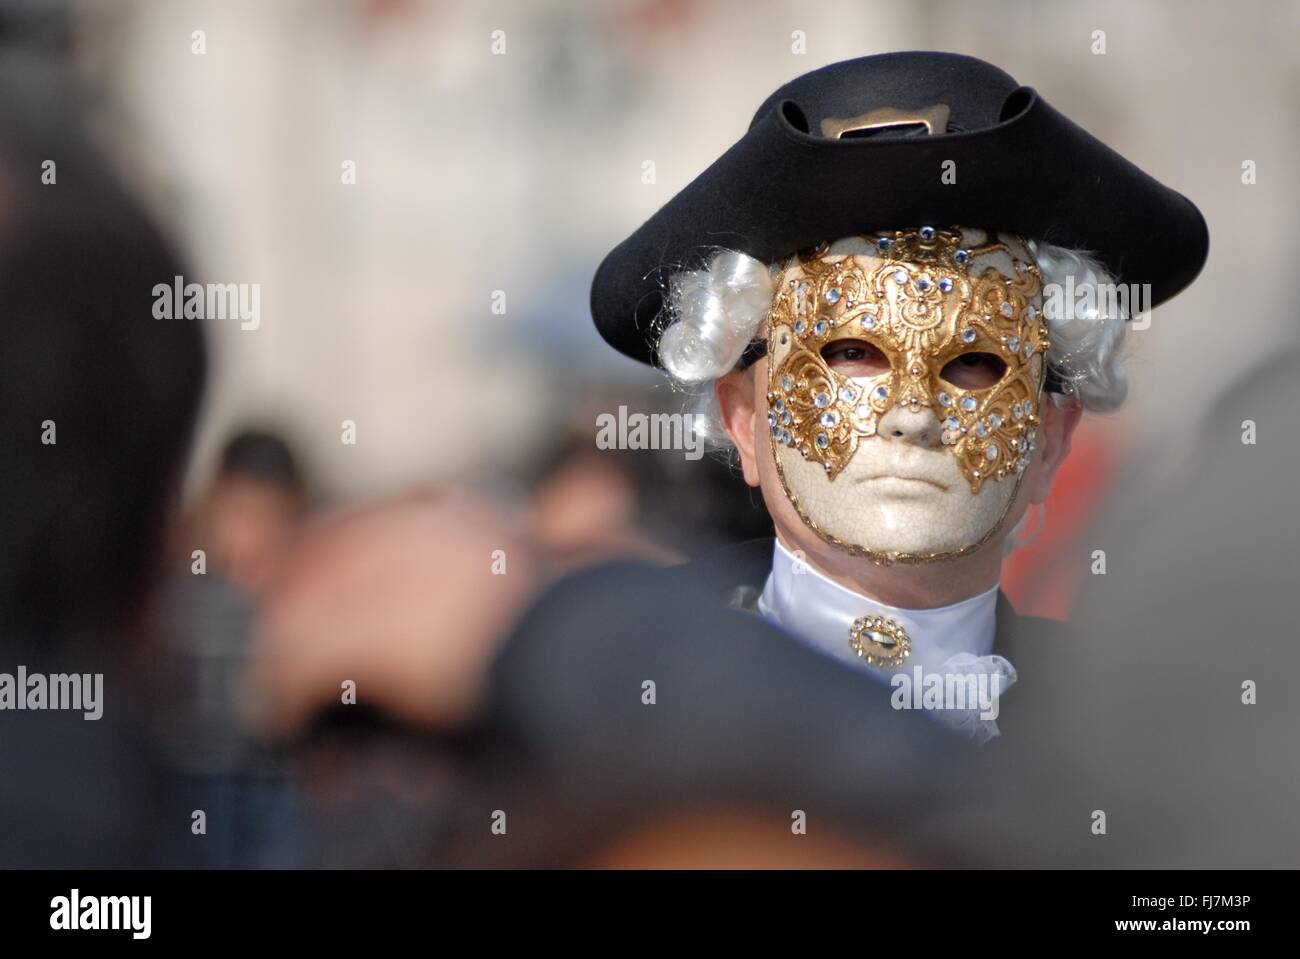 Ein Mann mit einer aufwendigen venezianische Maske und Kostüm während des jährlichen Karnevals von Venedig in Venedig, Italien. Karneval läuft offiziell für 10 Tage auf die christliche Feier der Fastenzeit endet. Stockfoto